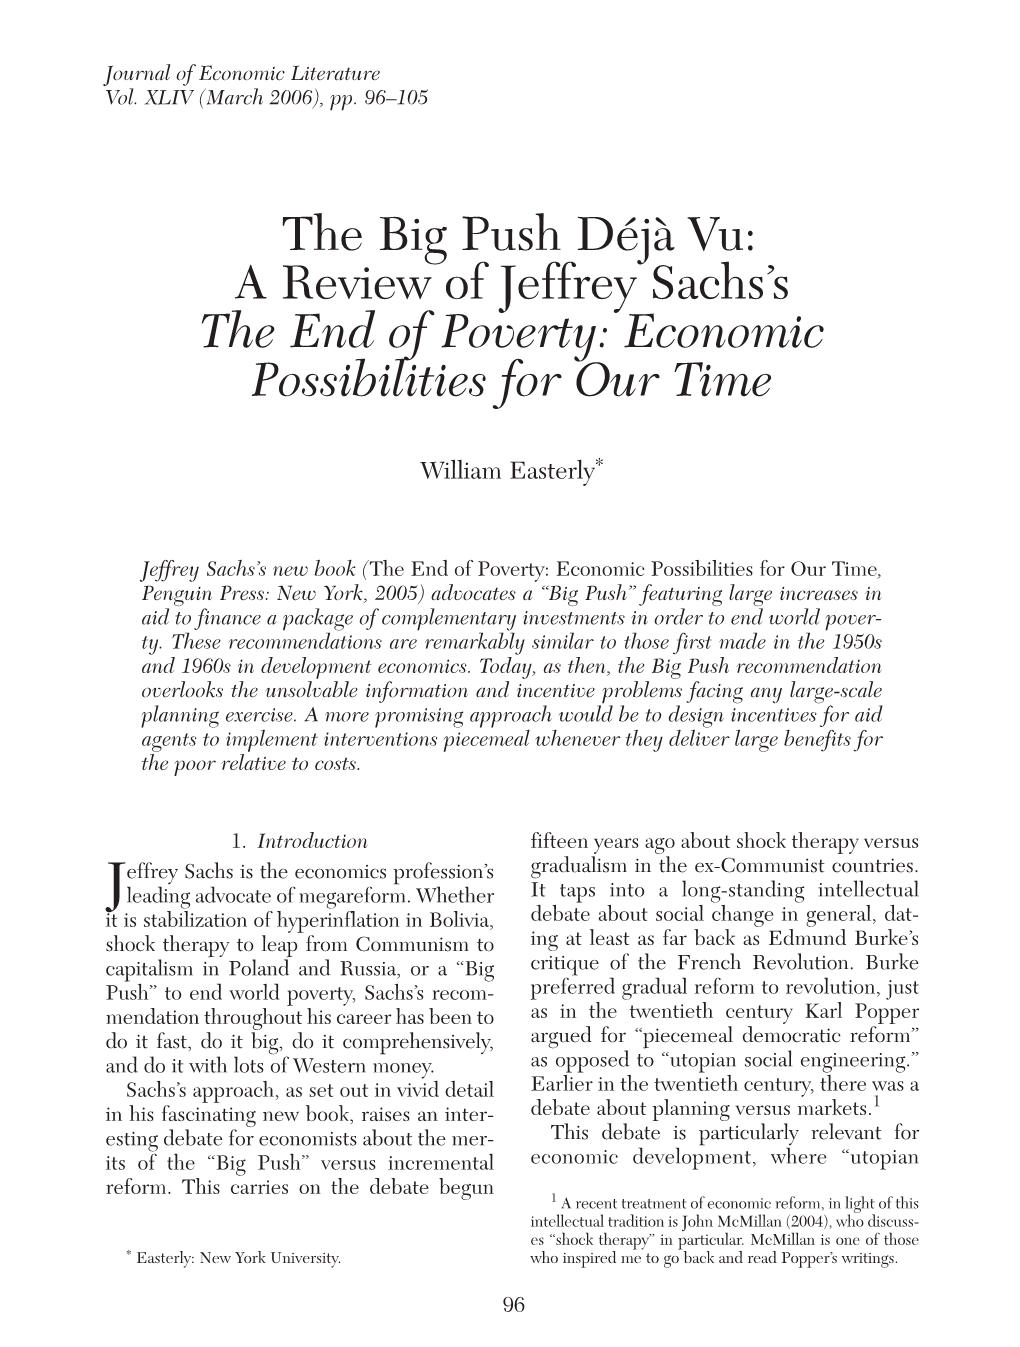 The Big Push Déjà Vu: a Review of Jeffrey Sach's the End of Poverty